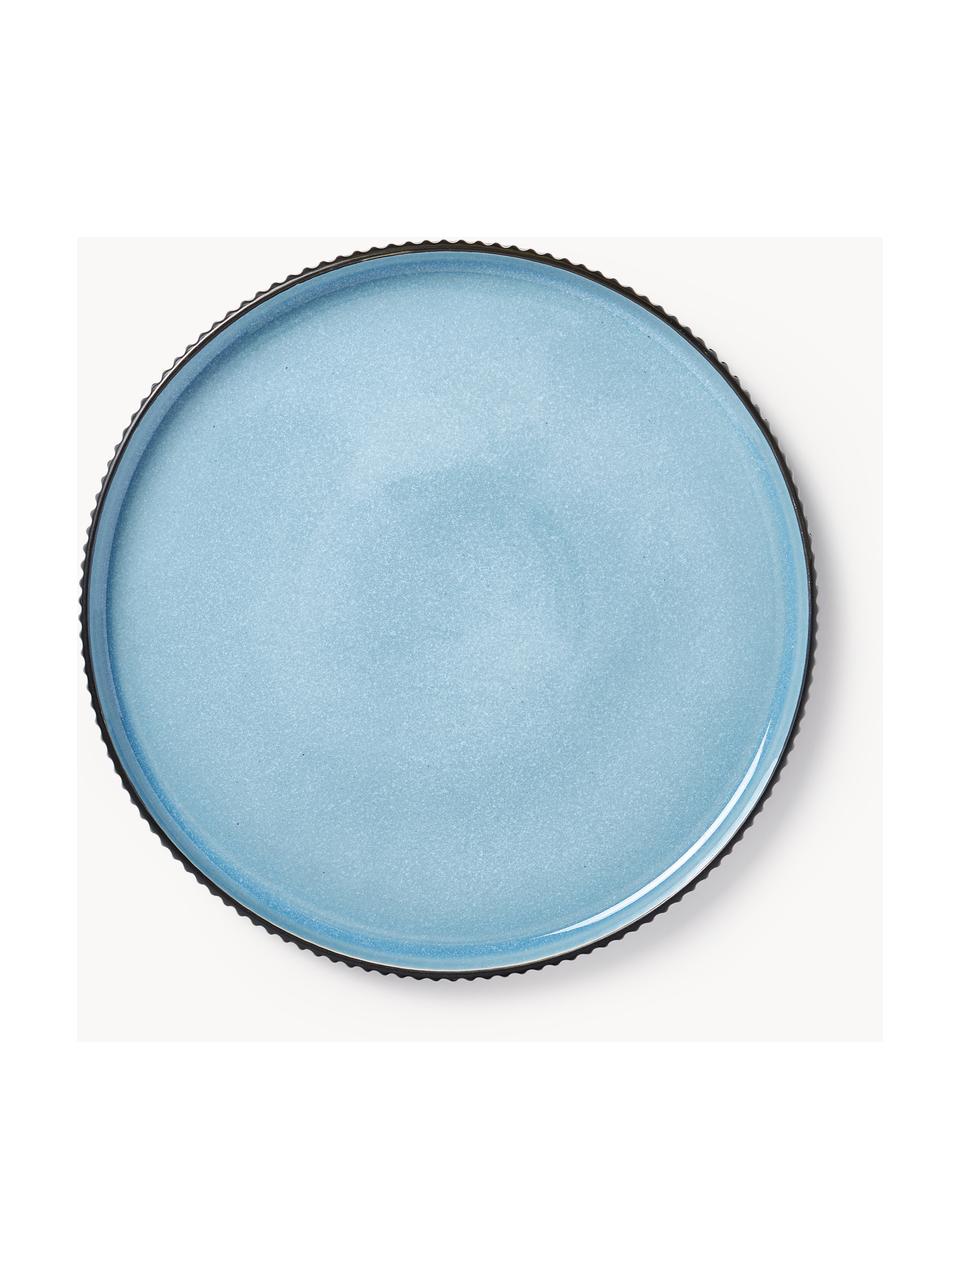 Speiseteller Bora mit Rillenrelief, 4 Stück, Steinzeug, glasiert, Hellblau glänzend, Schwarz matt, Ø 27 cm